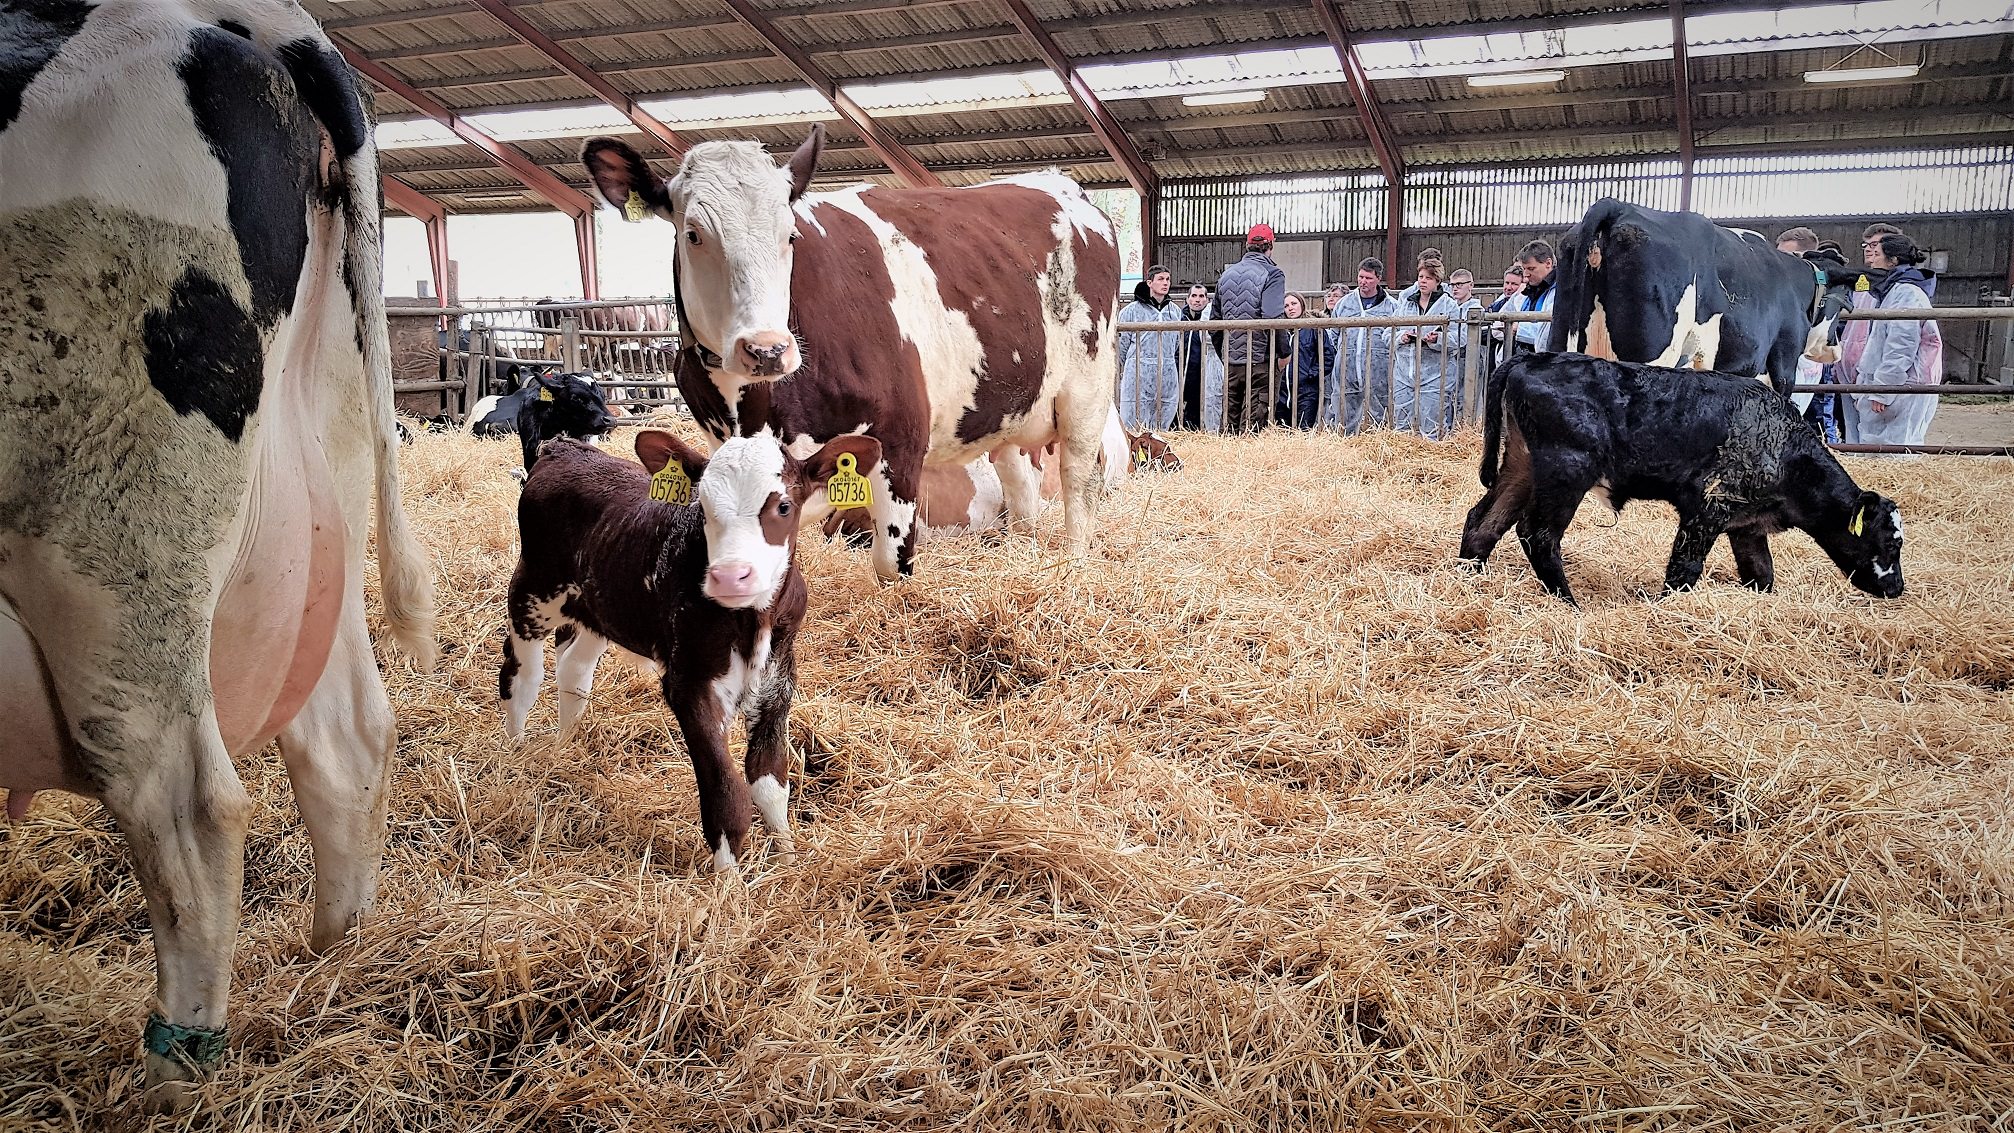 Køer og kalve i halm i en stald - besøgende ses i baggrunden